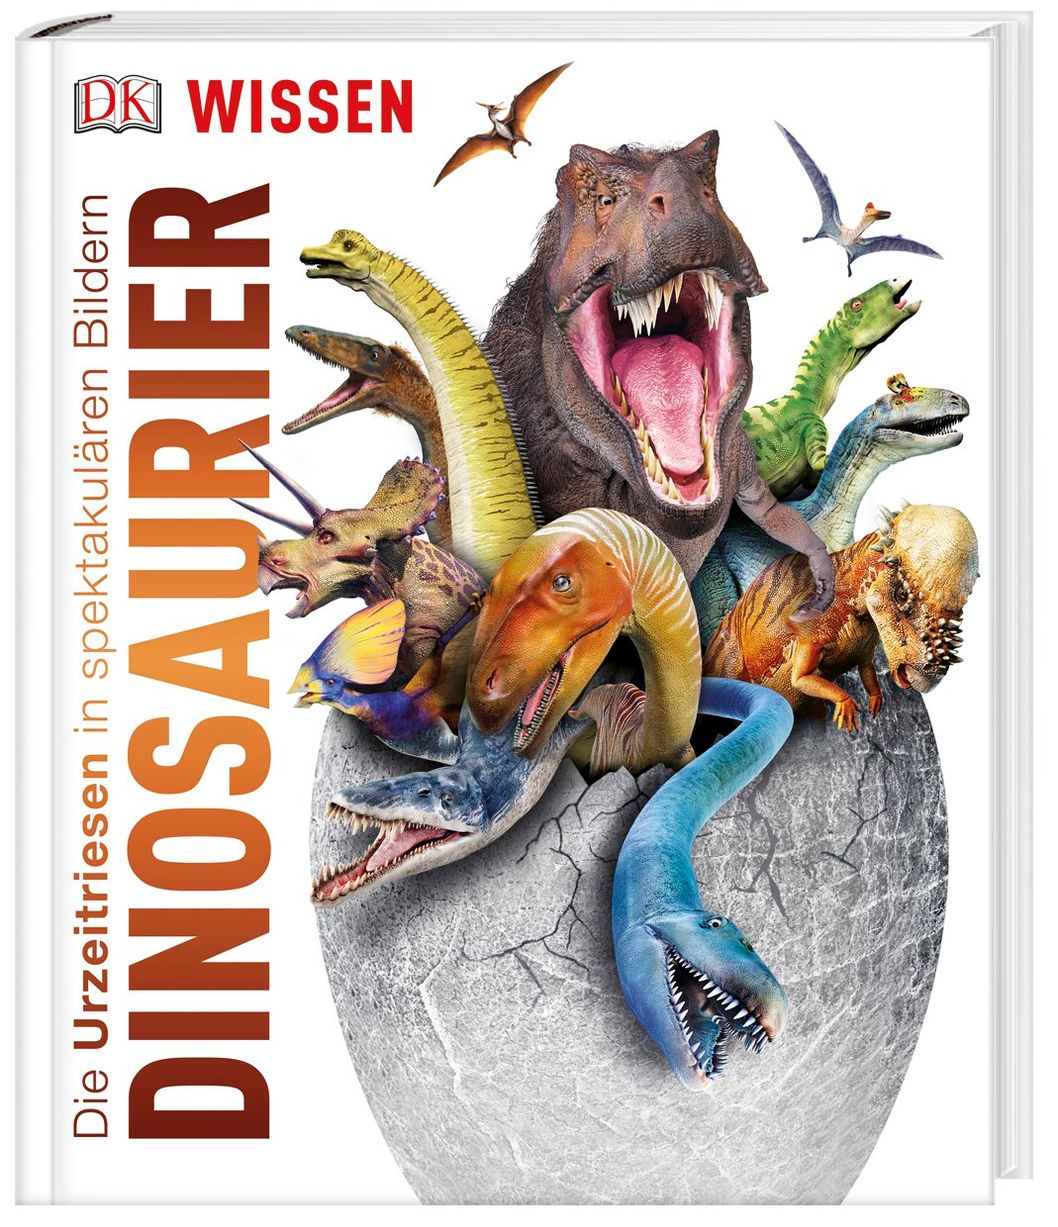 DK Wissen. Dinosaurier Buch von John Woodward versandkostenfrei kaufen